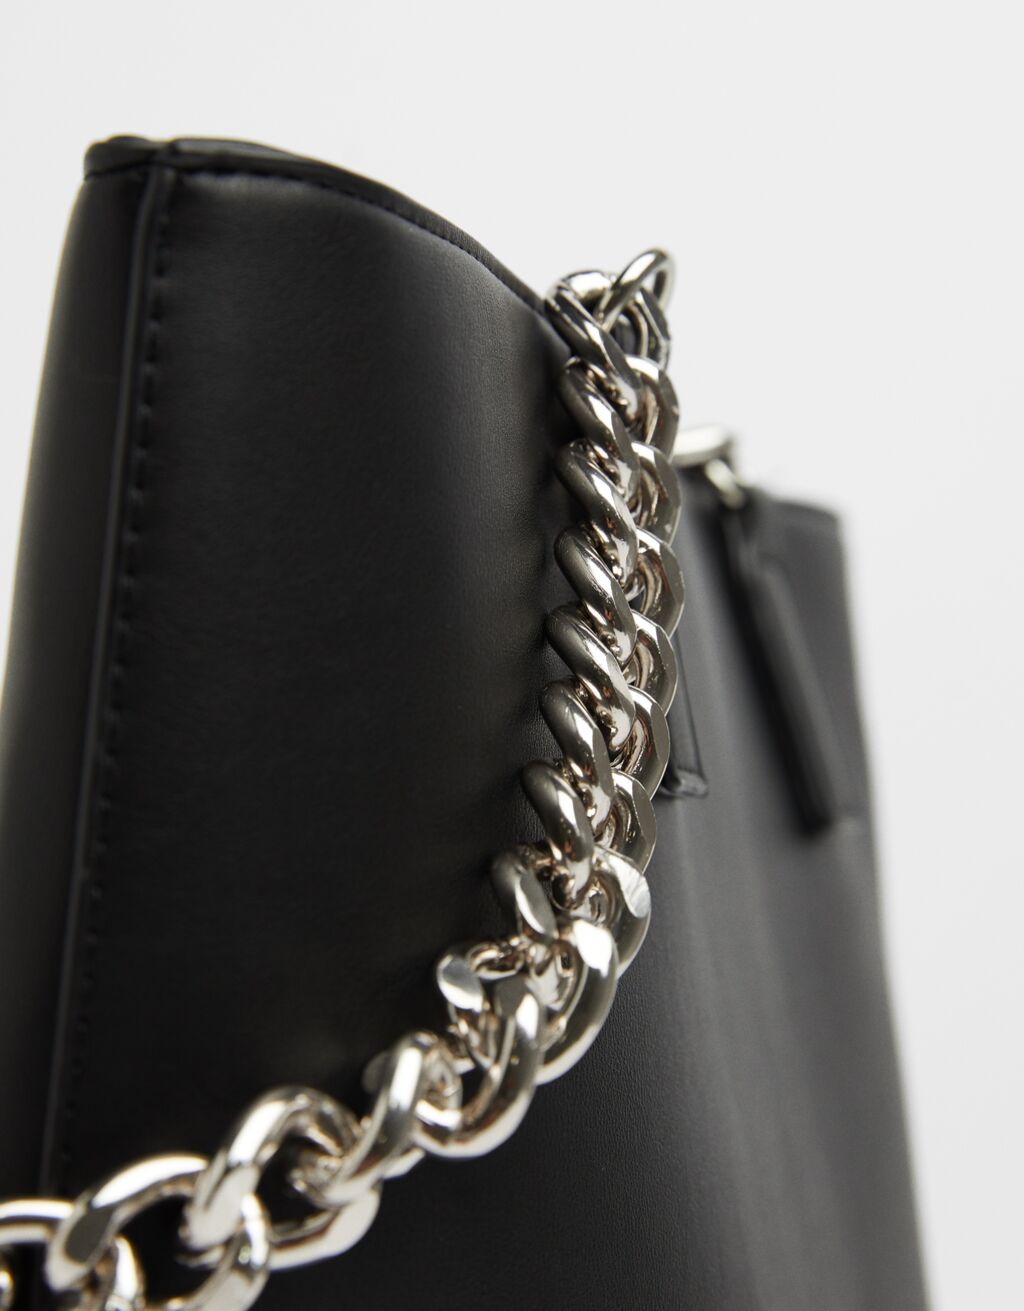 Bershka tiene el bolso negro con cadena que parece de Chanel y vale menos de 20 euros